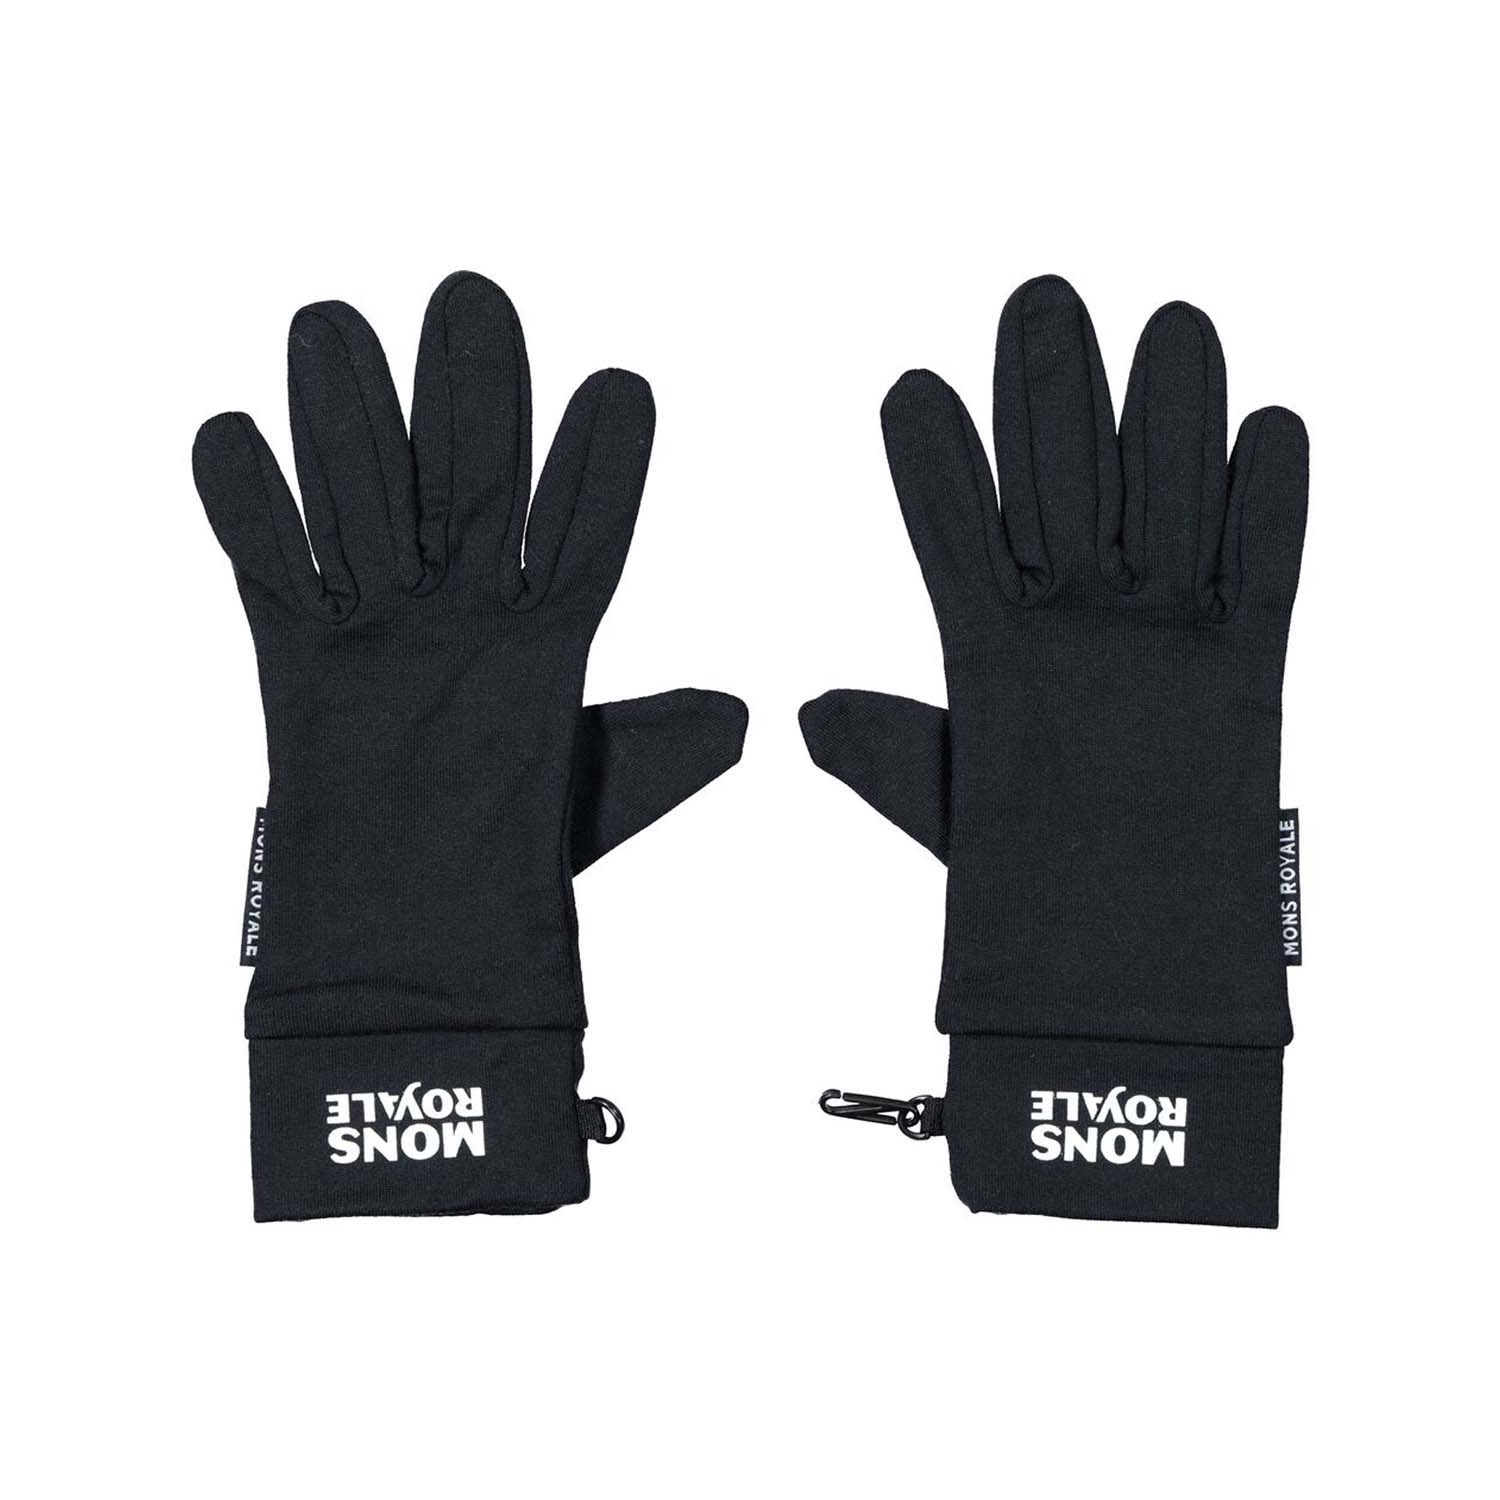 Mons Royale Elevation Gloves Black 2021